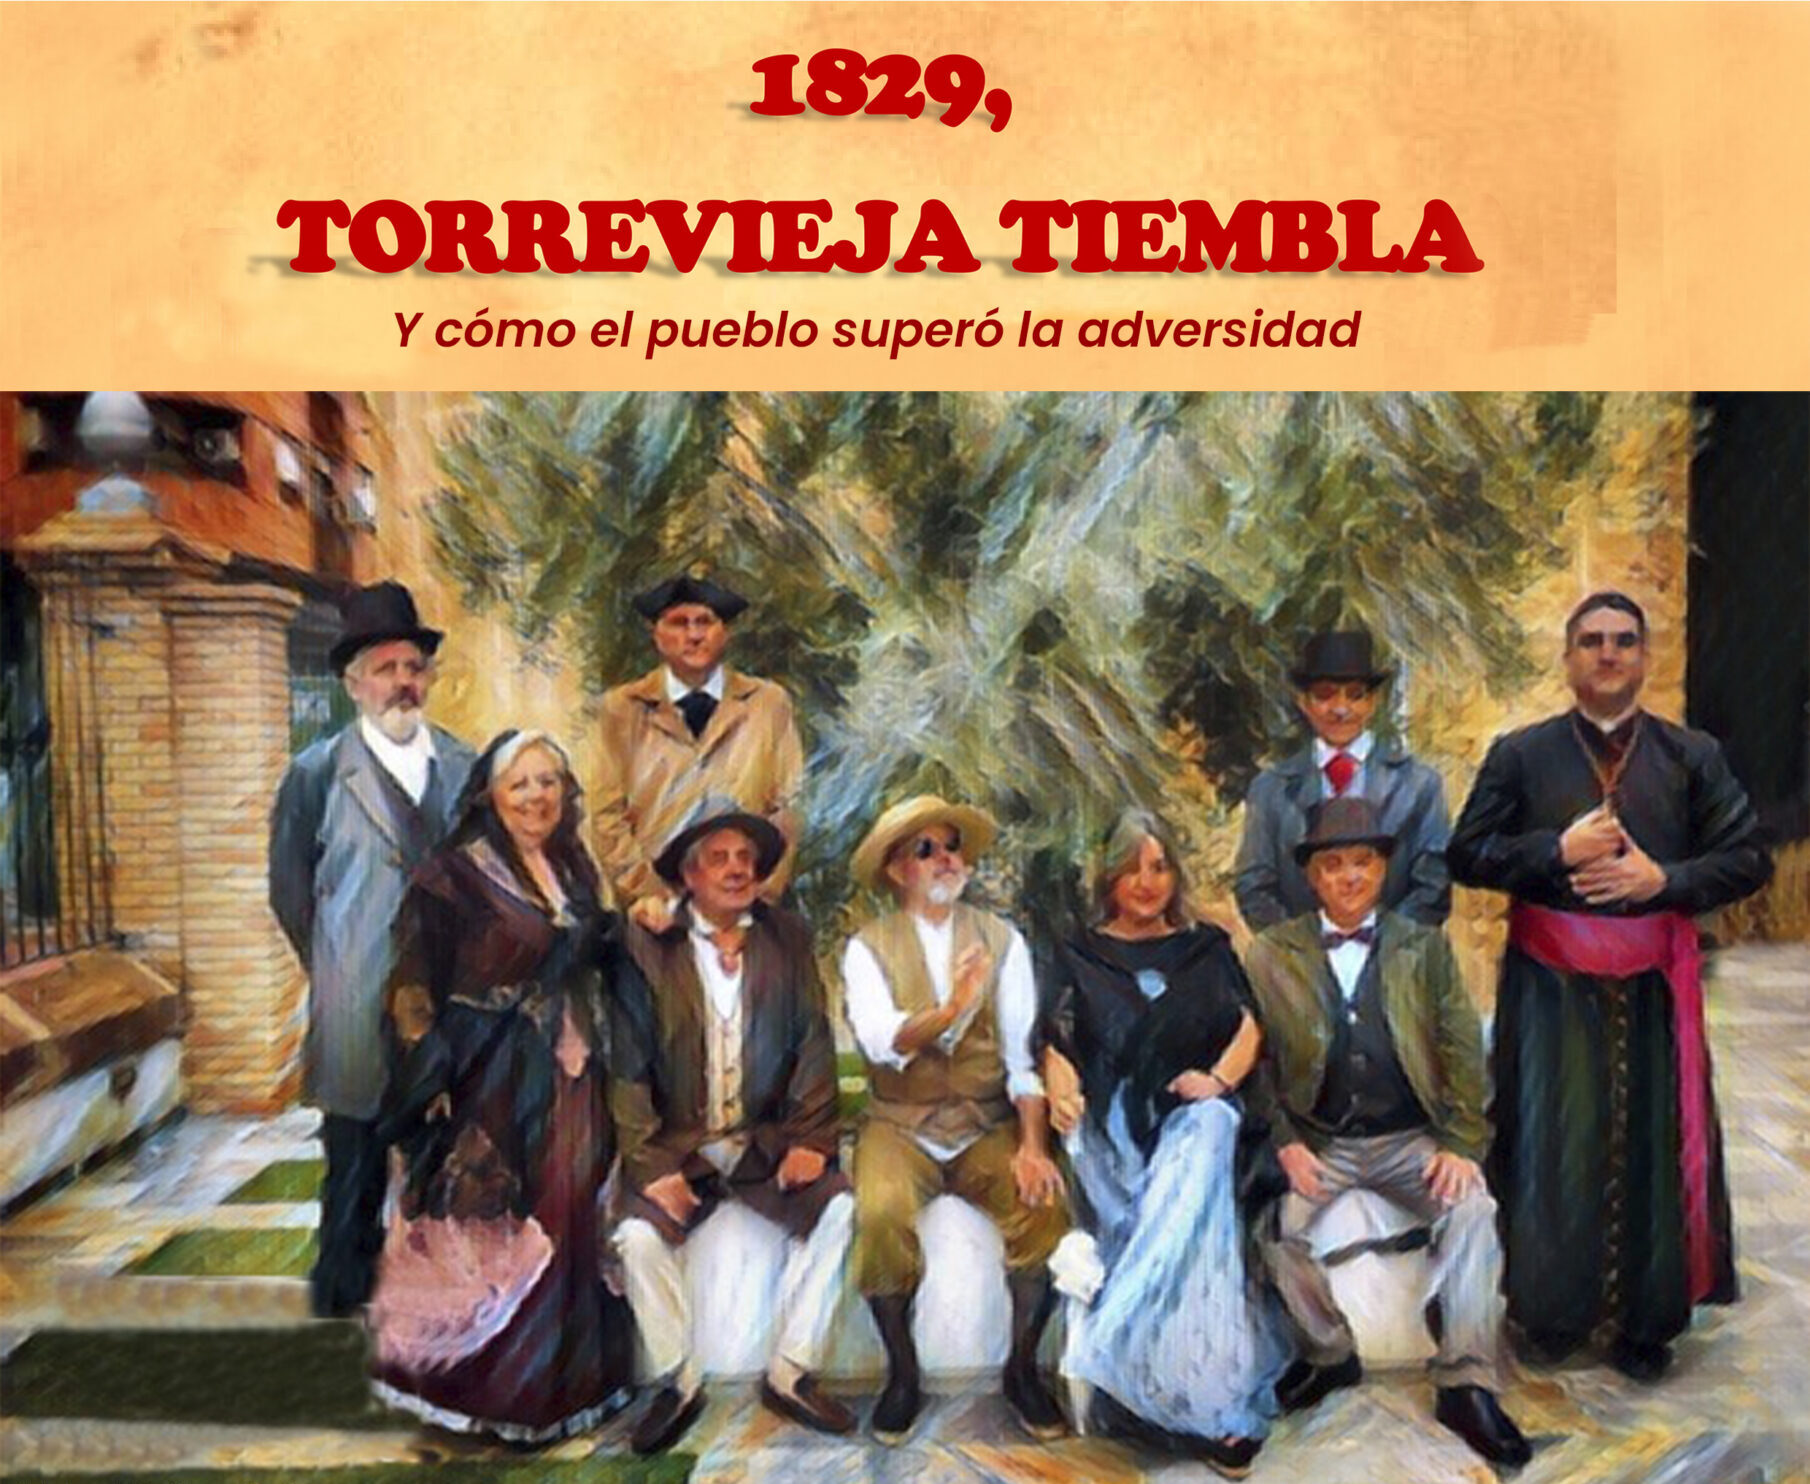 Las jornadas 'Torrevieja tiembla' recordarán el terromoto de 1829